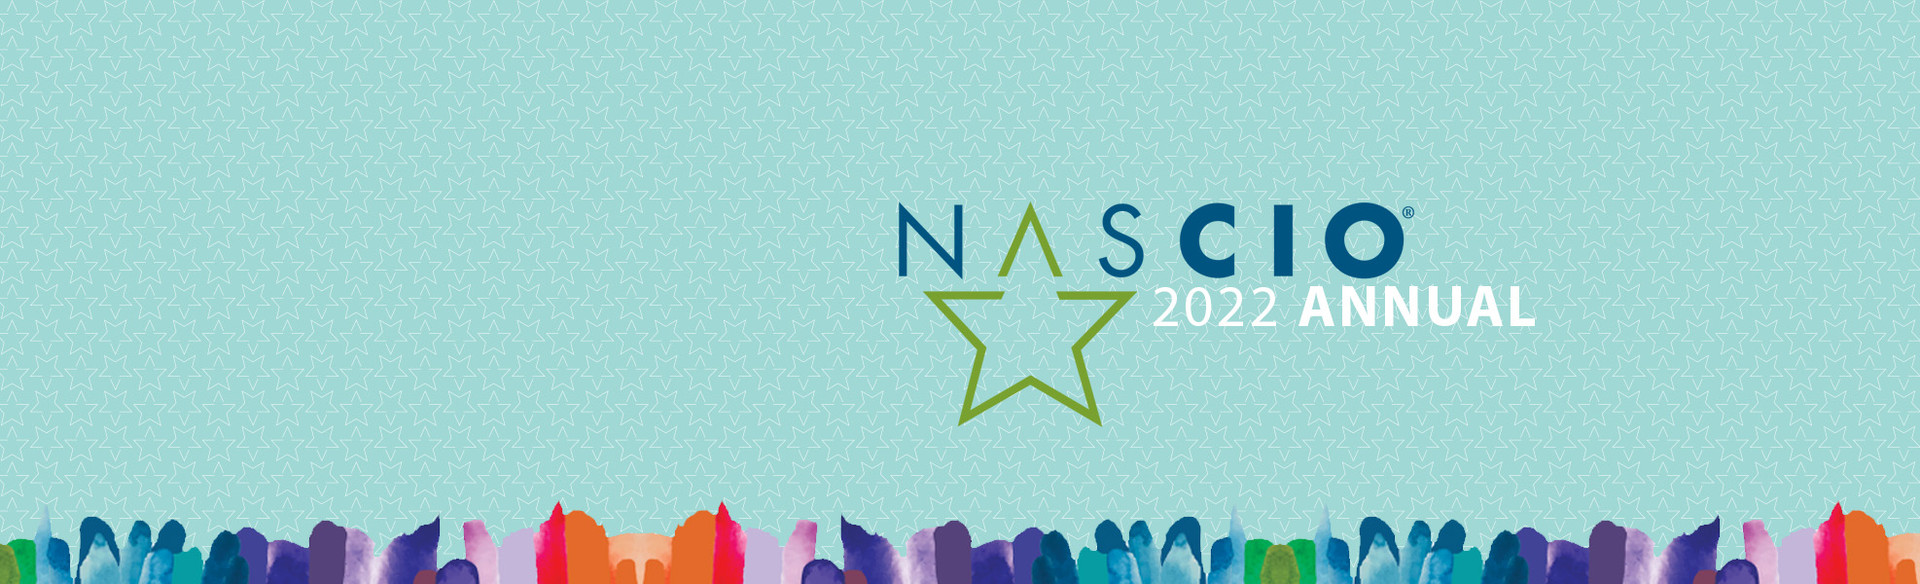 NASCIO 2022 Annual